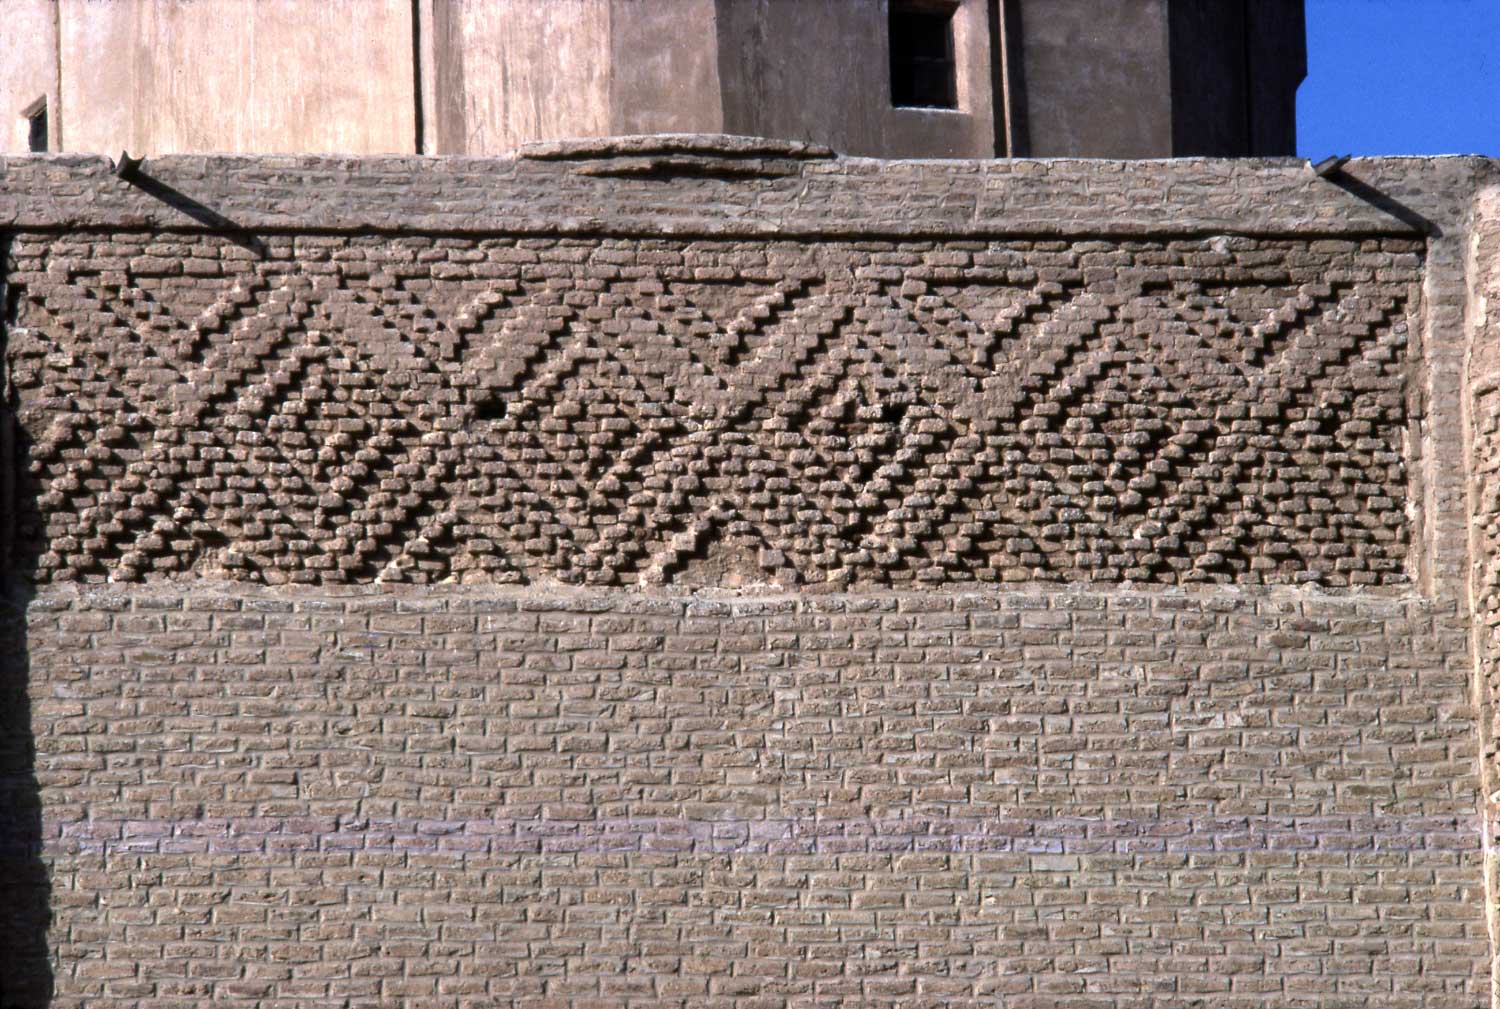 Exterior detail of a band of hazar-baf brickwork